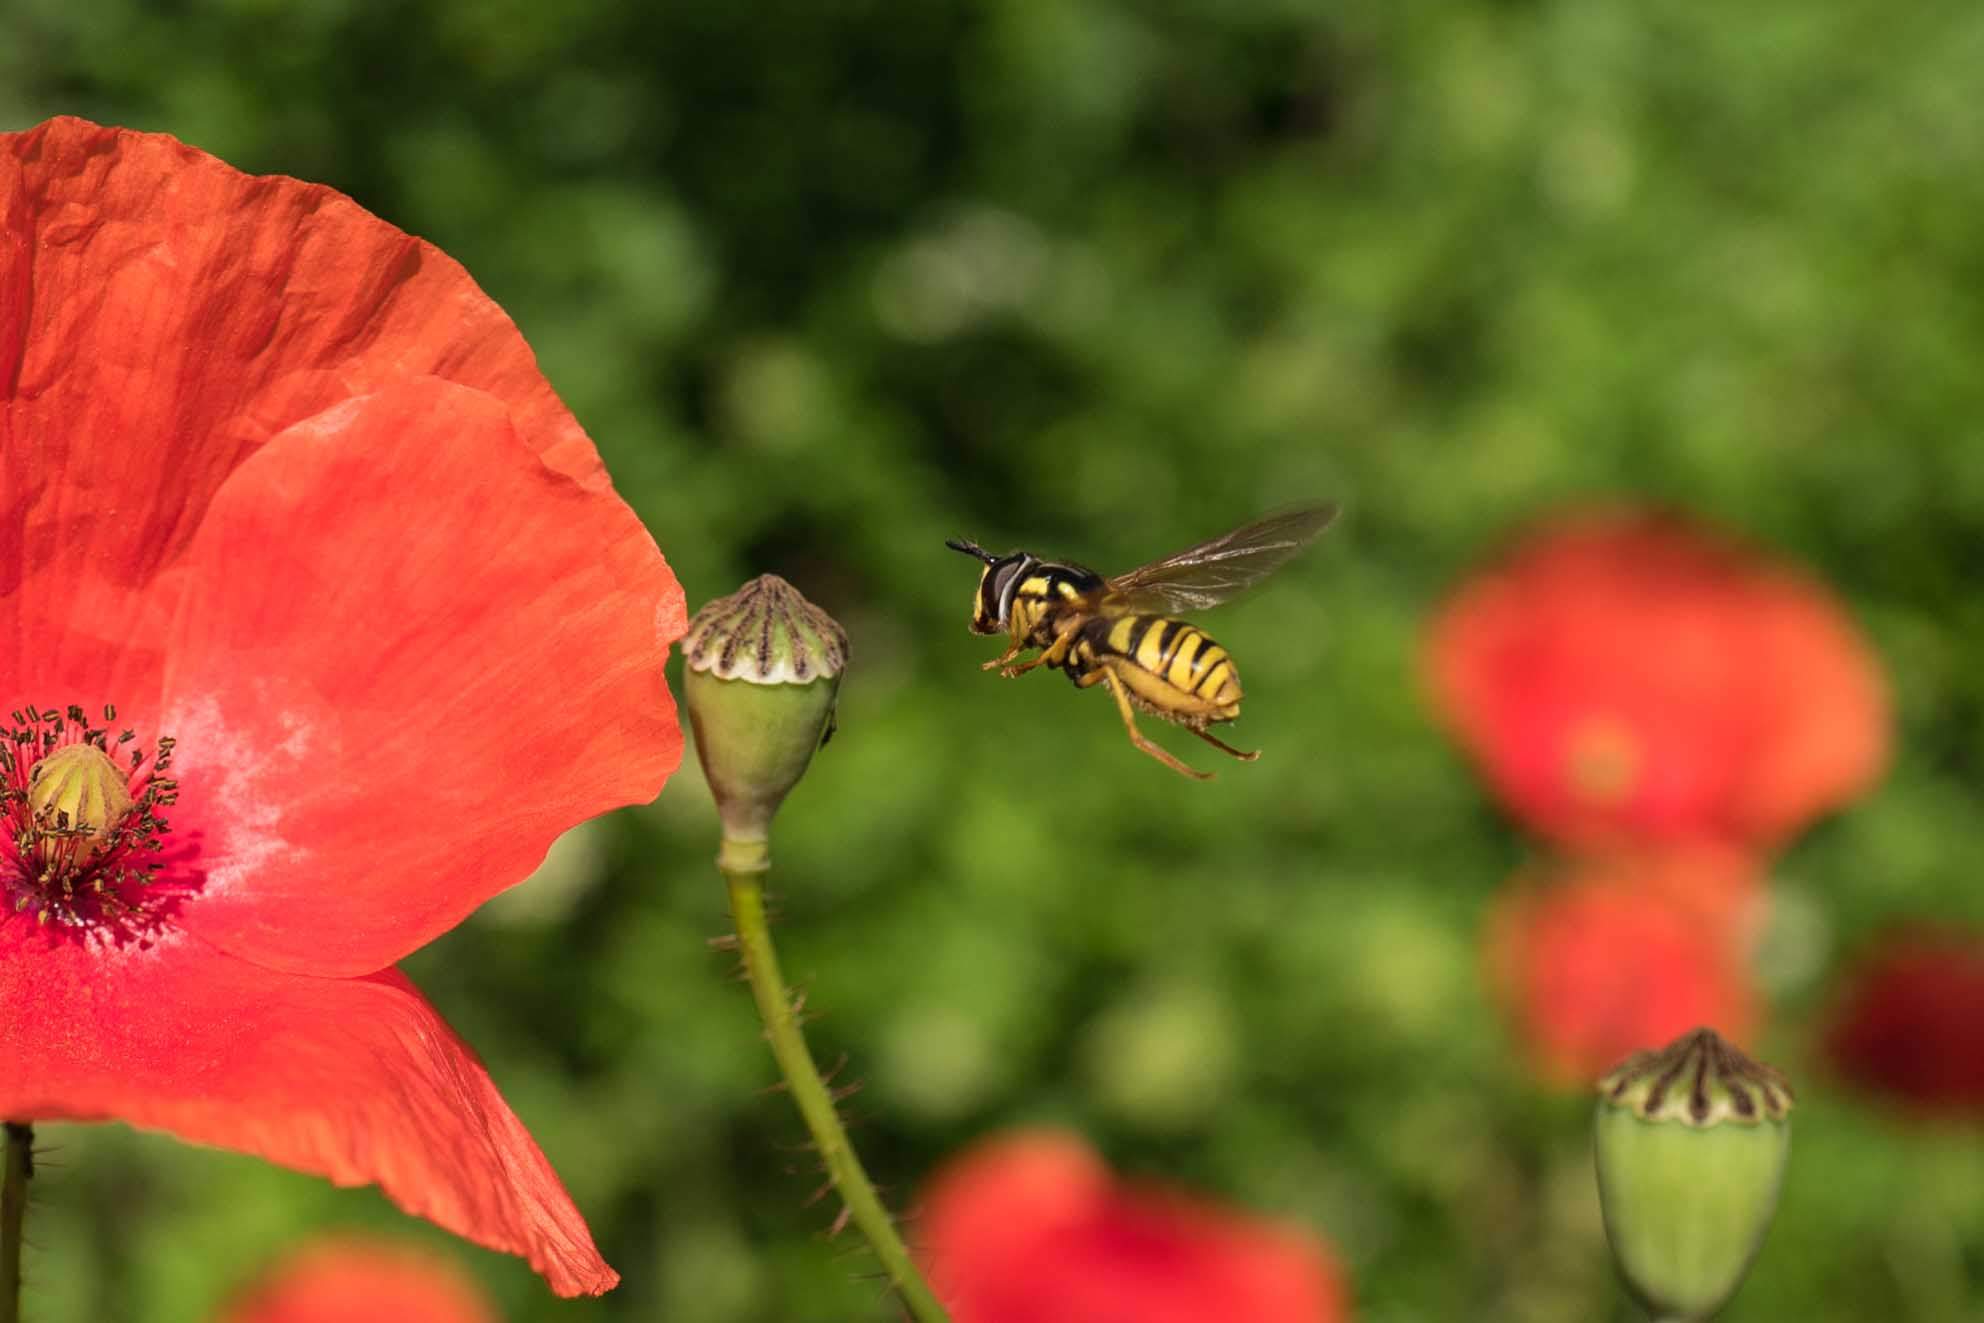 Eine Nahaufnahme von einer Schwebefliege, die in der Luft schwebt und sich in der Nähe einer Blüte befindet. Die Fliege hat gelb-schwarze Streifen. Die Blüte ist noch nicht aufgeblüht und hat grüne Kelchblätter mit spitzen Enden. Eine leuchtend rote Mohnblume mit zarten Blütenblättern nimmt die linke Seite des Bildes ein. Der Hintergrund ist mit Grünzeug gefüllt, was auf einen Garten- oder Feldhintergrund hinweist.